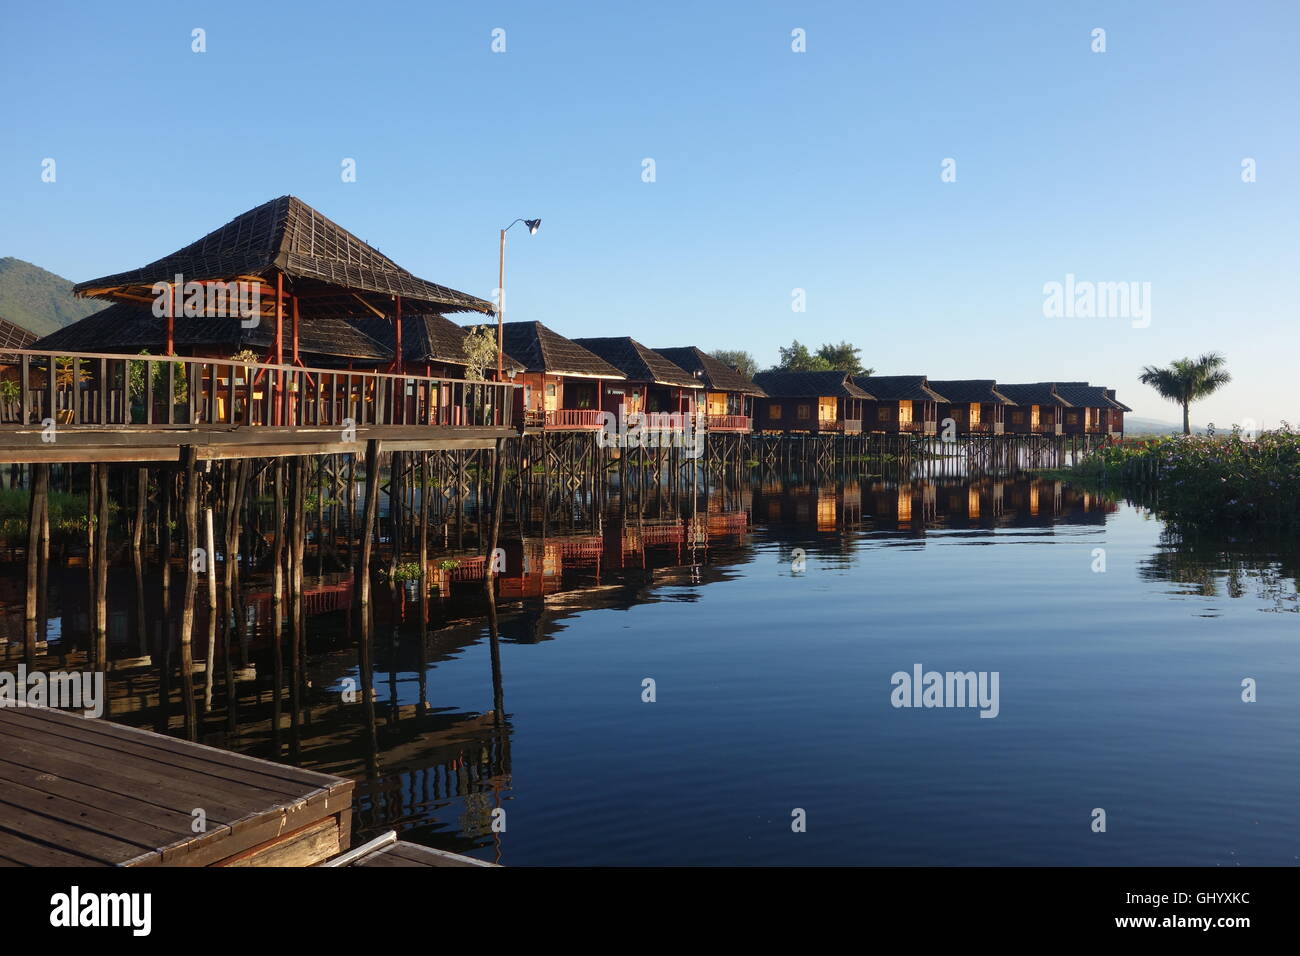 Myanmar lodges en bois construits sur pilotis au lac Inle au frais bleu ciel et eaux calmes Banque D'Images